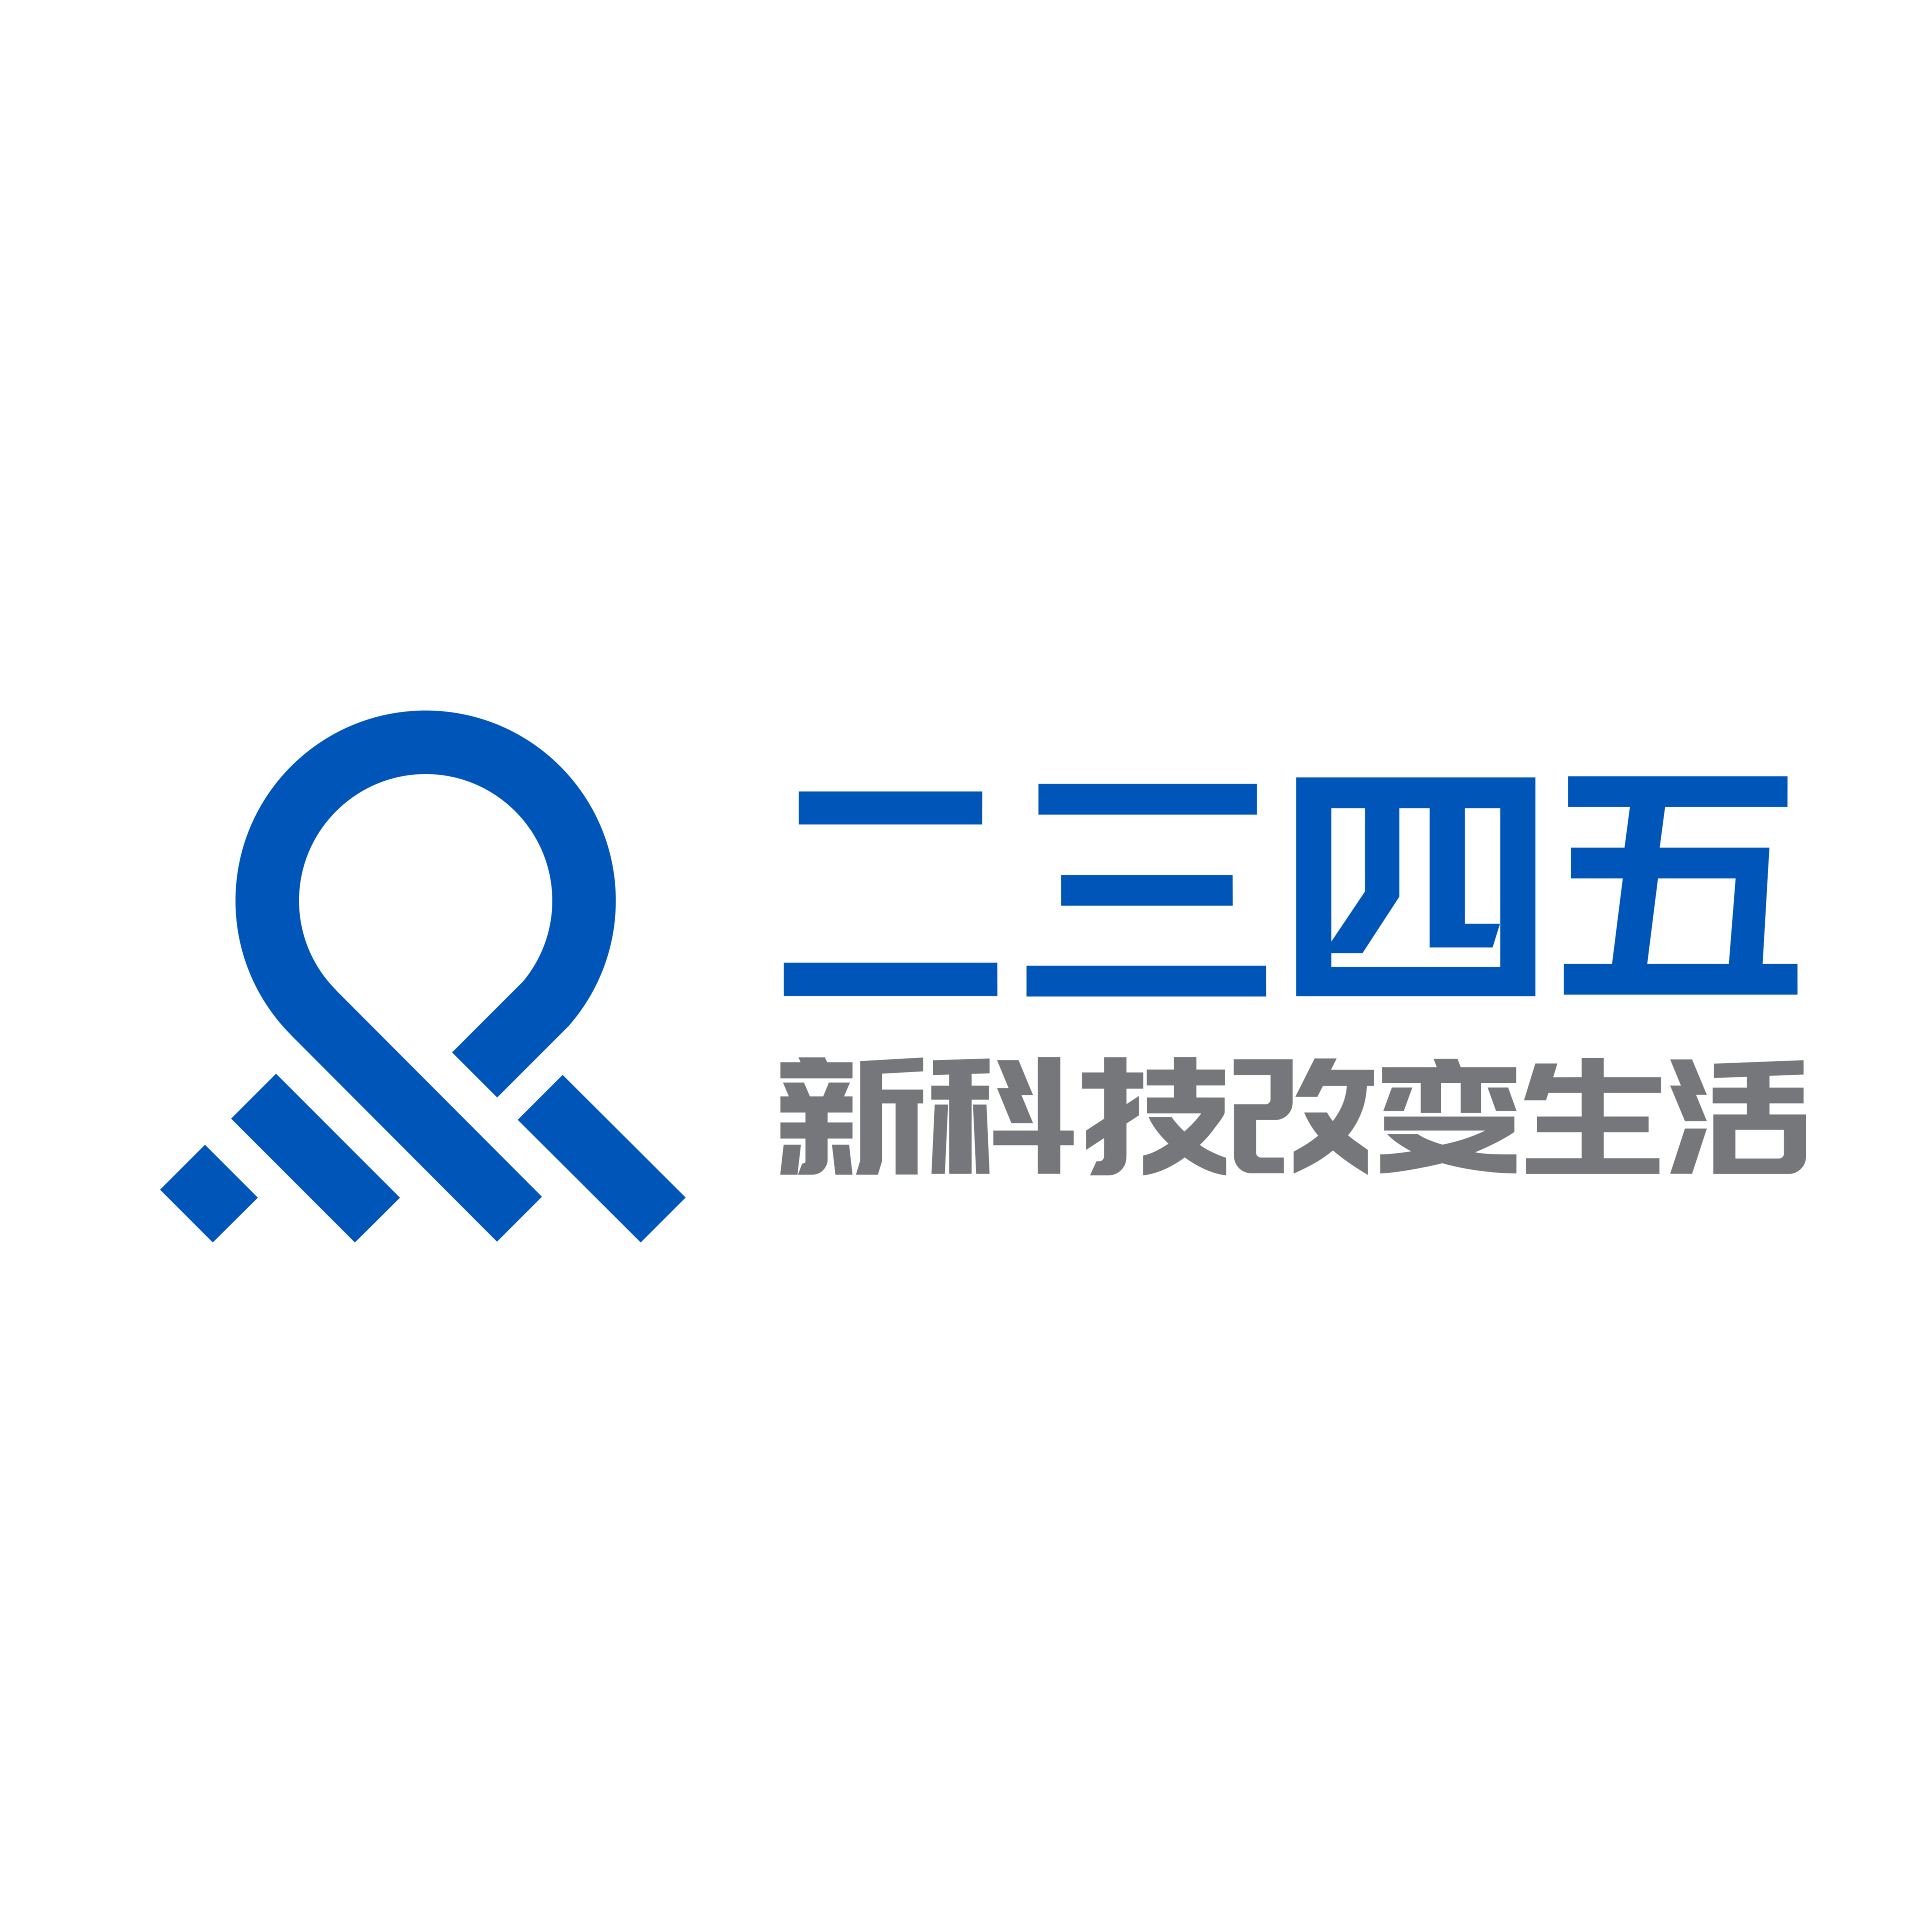 上海二三四五网络科技有限公司